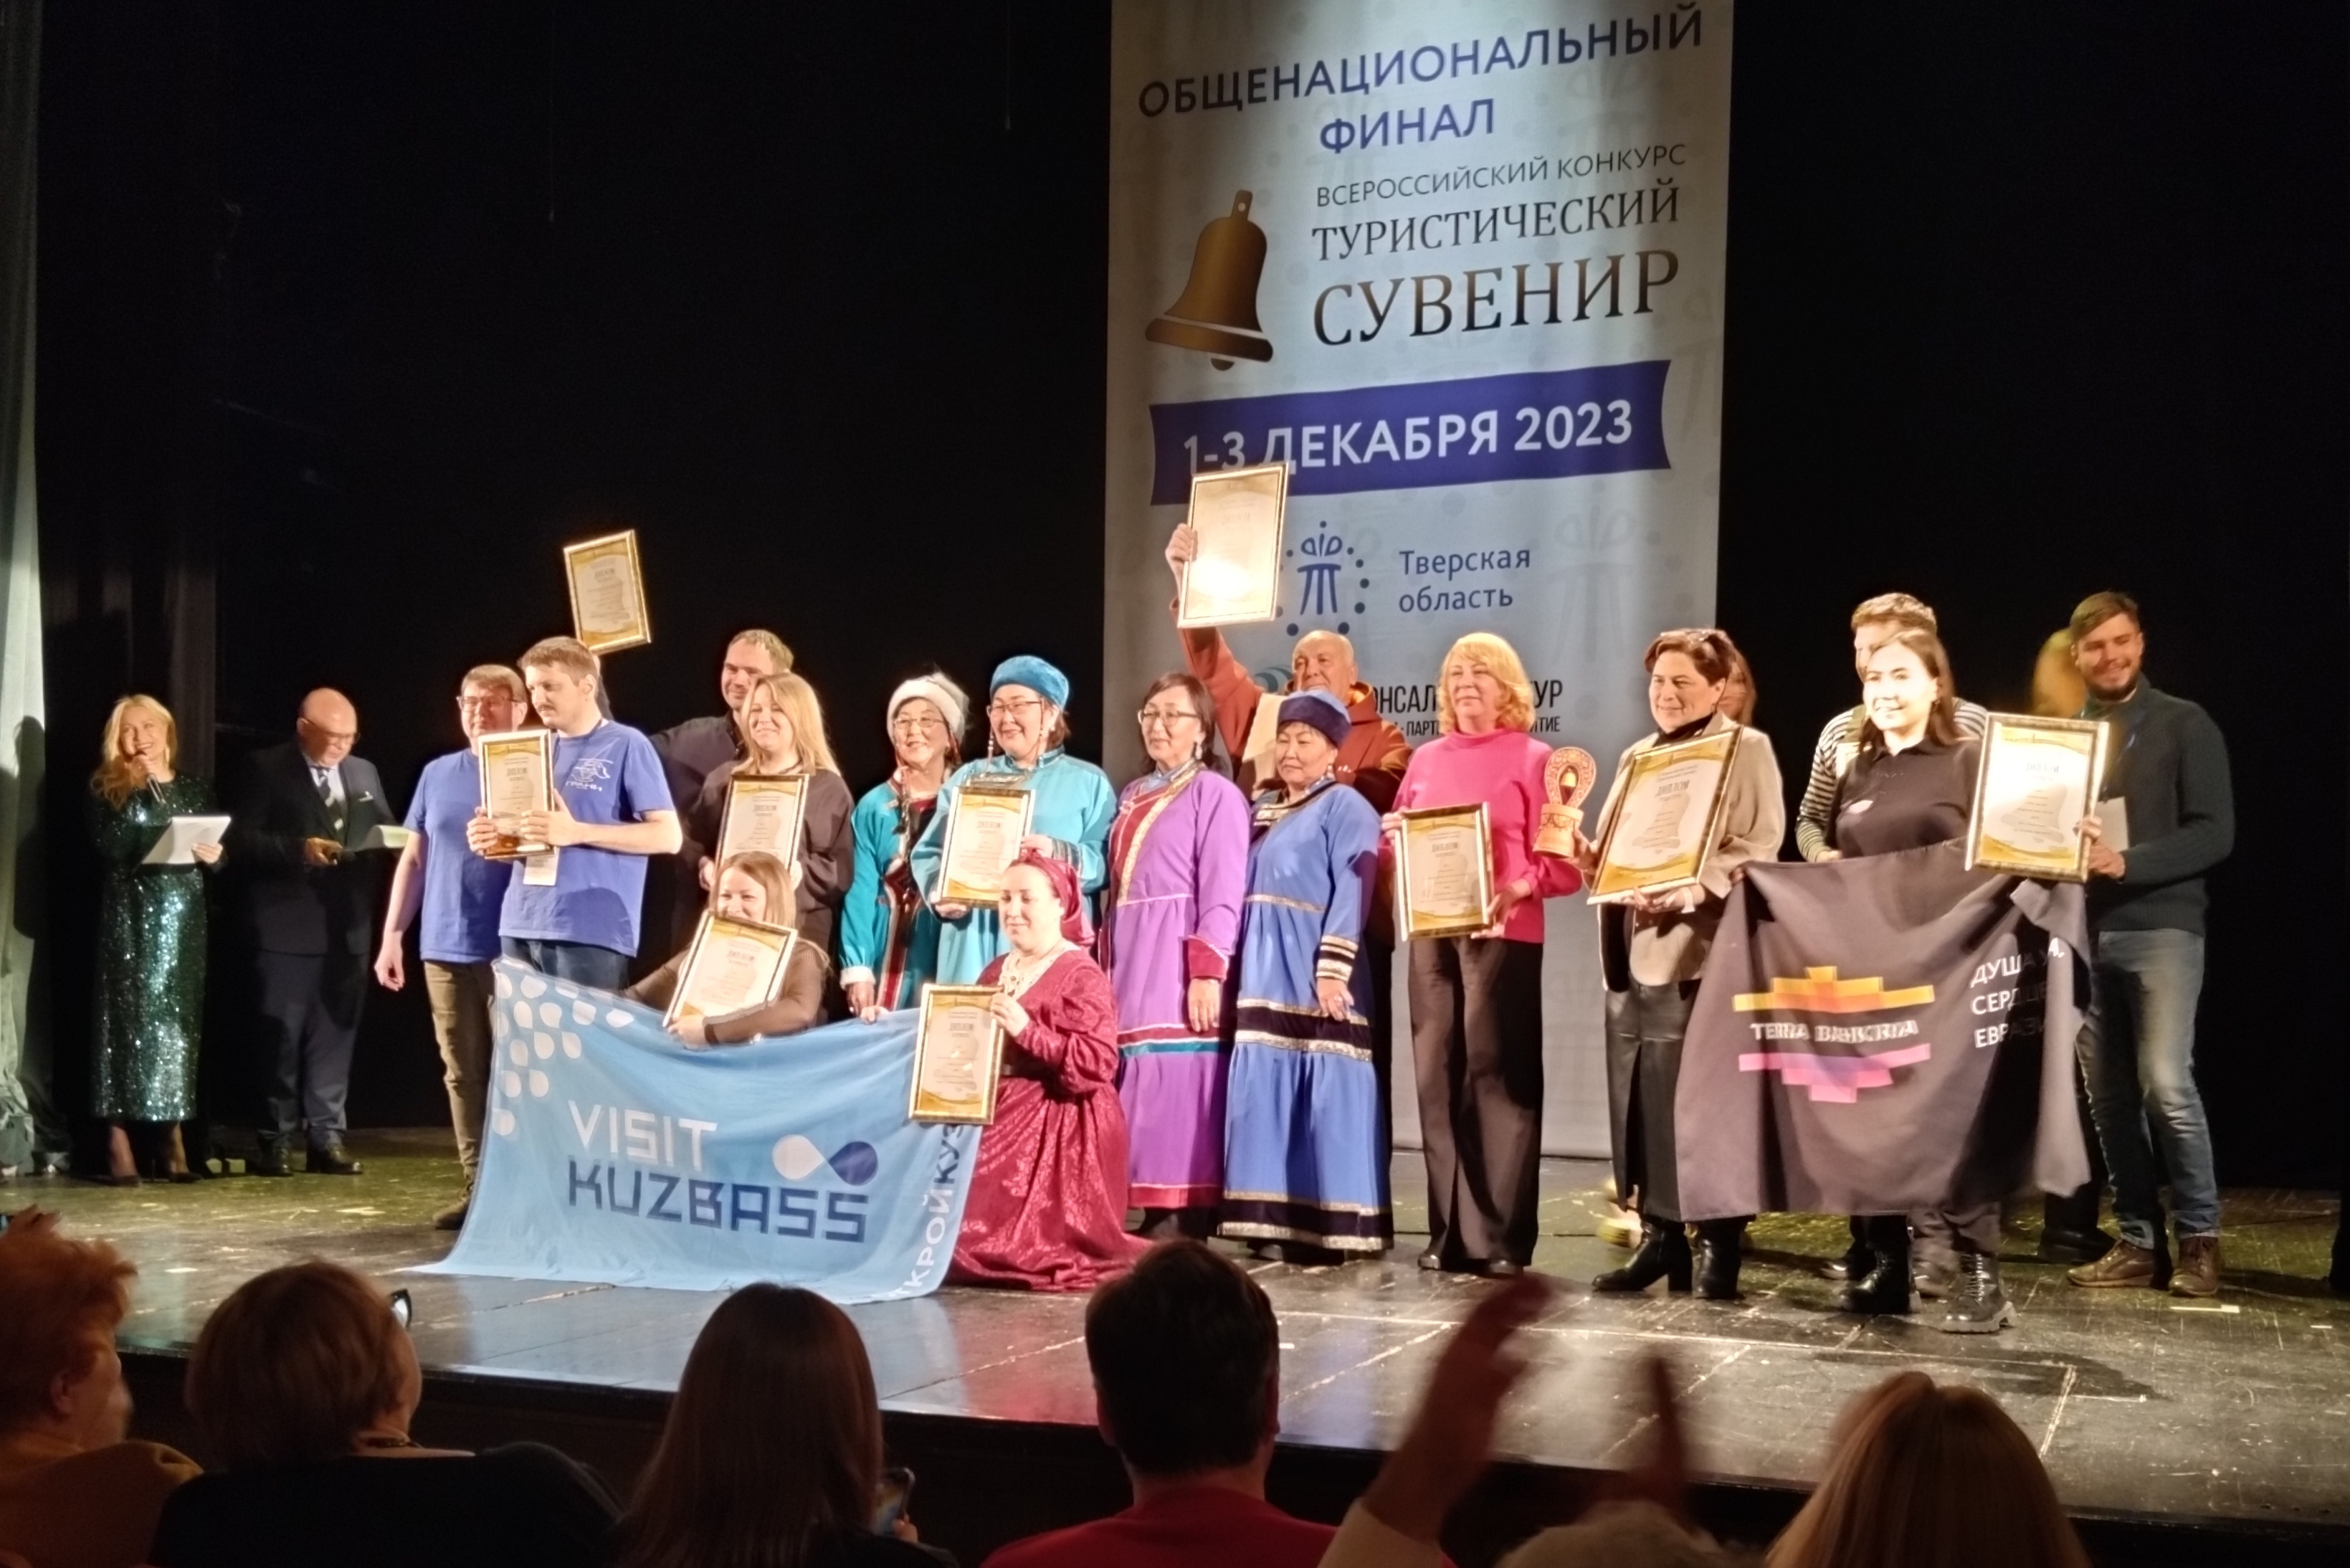 Особенные мастера организации «Грани» стали победителями Всероссийского конкурса «Туристический сувенир».